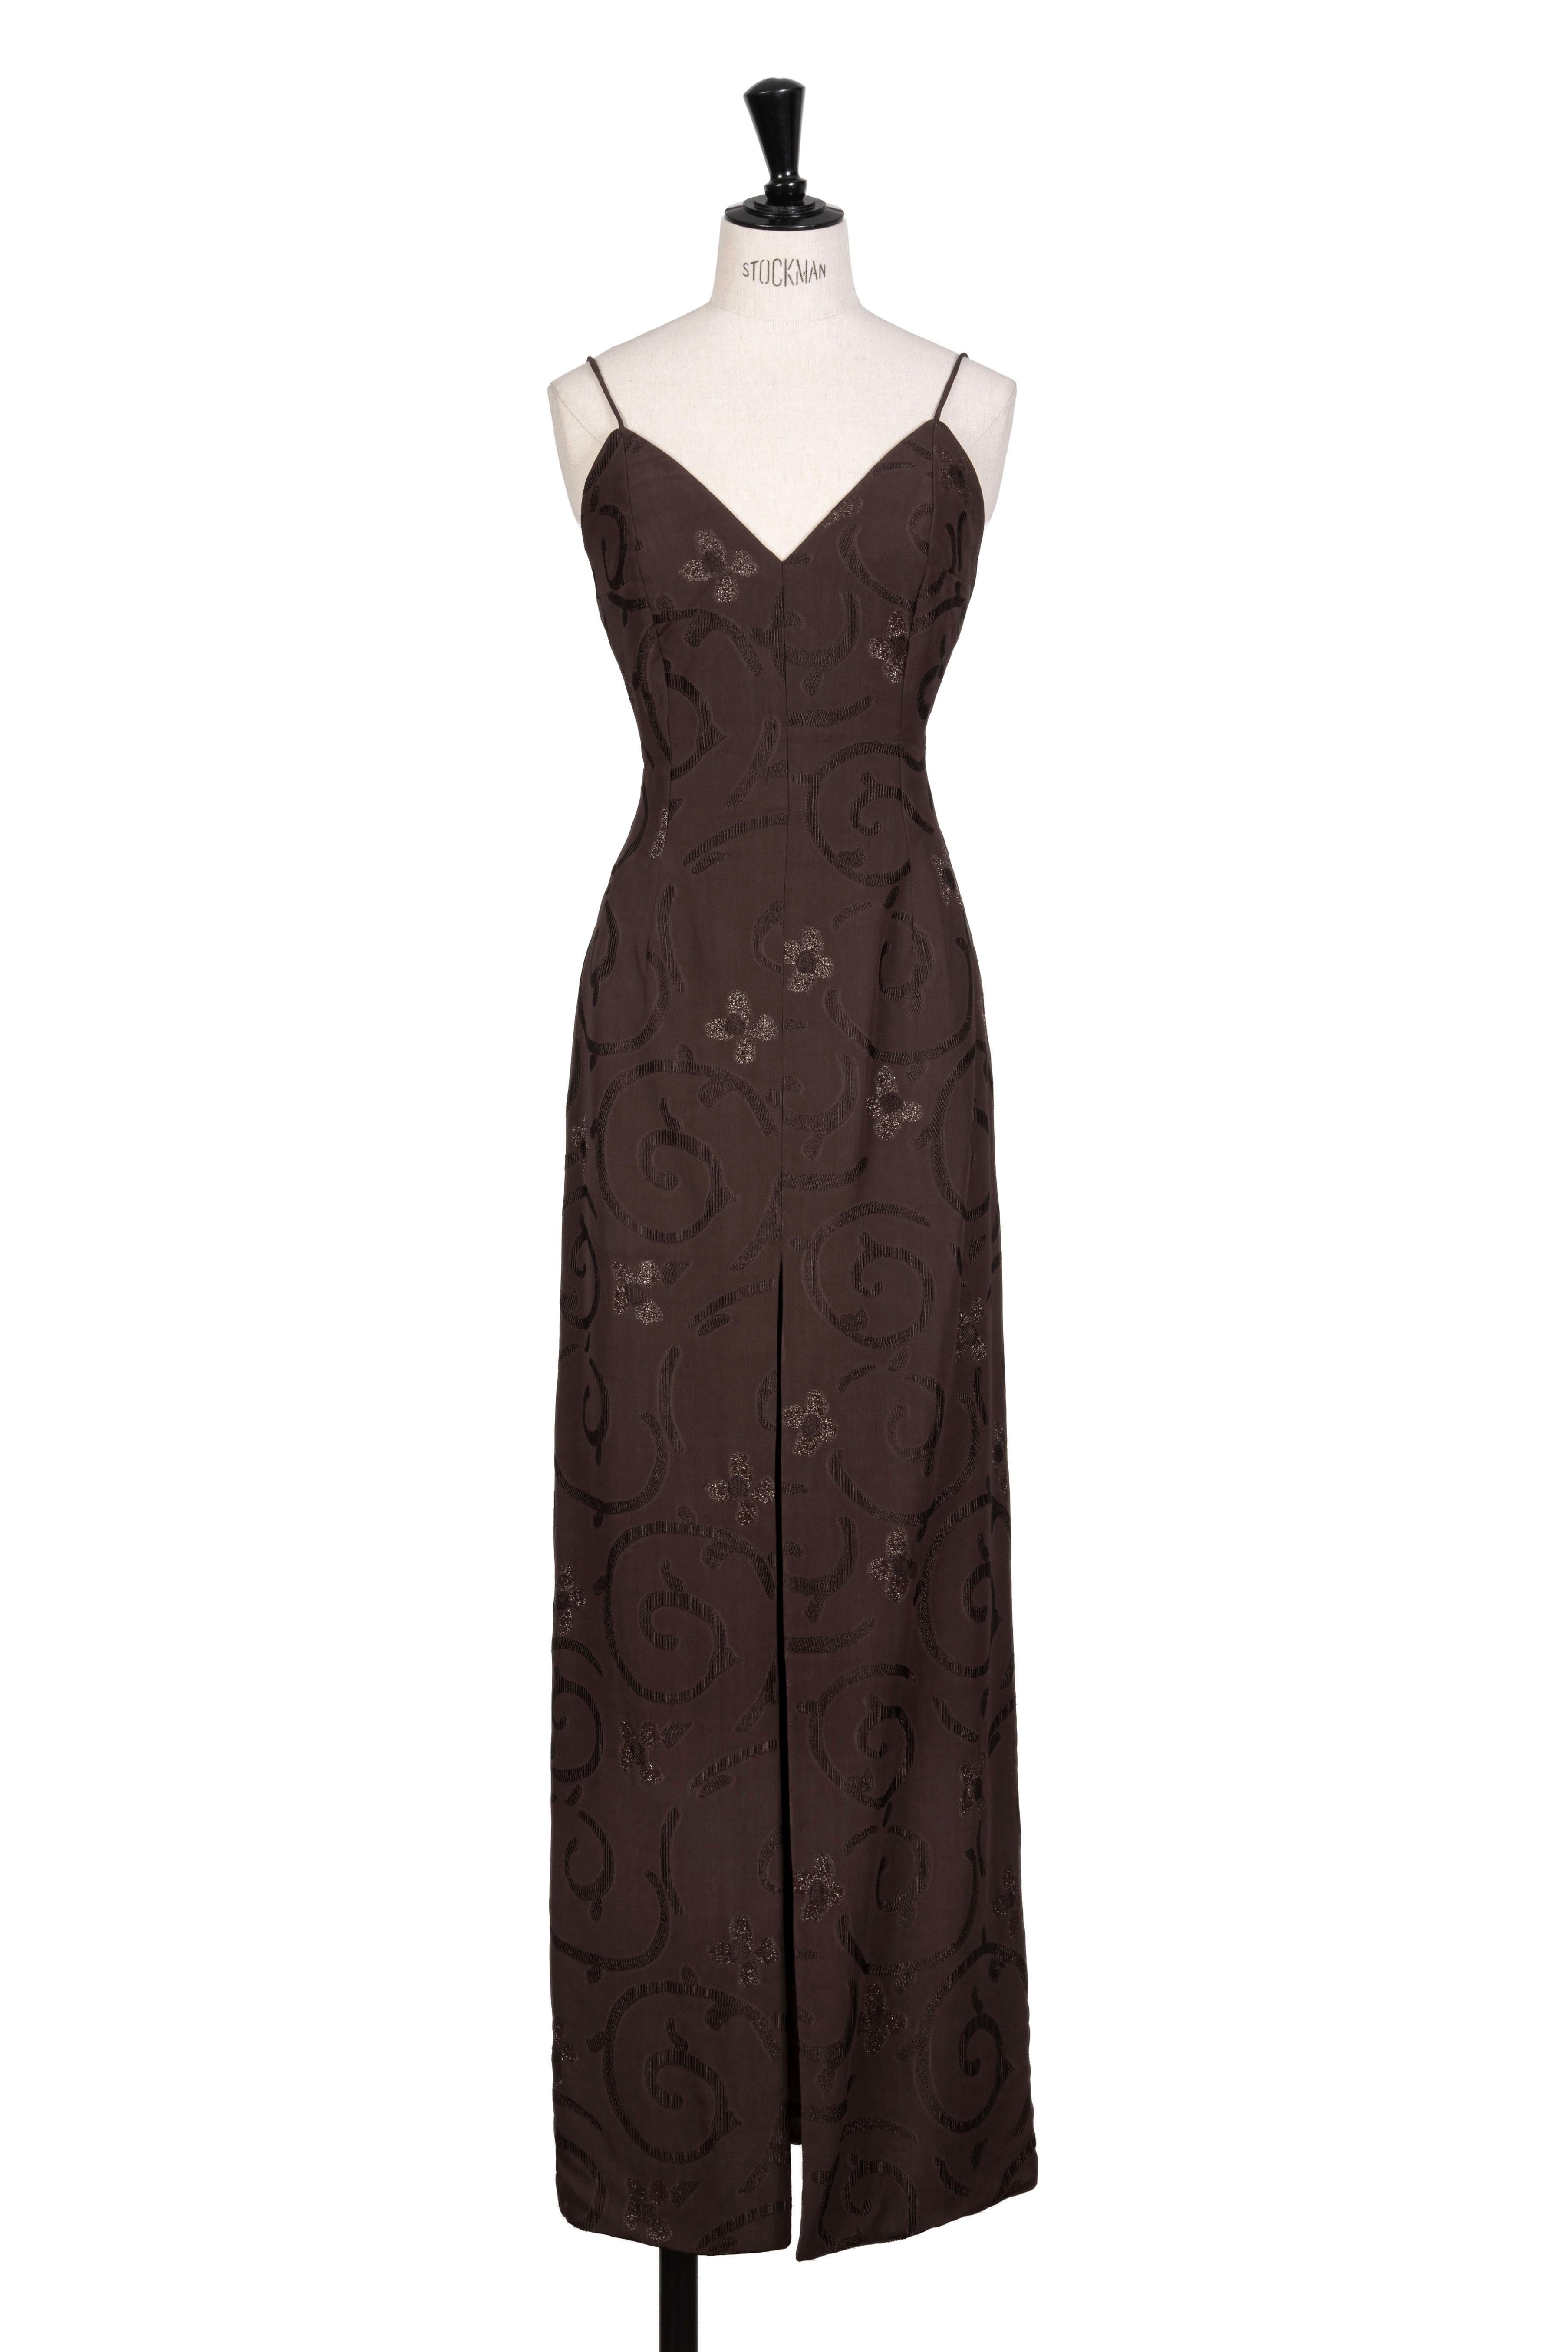 Oh ! Jackie a le plaisir de proposer cette robe longue sensuelle de Giorgio Armani, issue de la collection printemps/été 1997 du créateur. Je suis ravie d'avoir trouvé des documents relatifs aux défilés et aux campagnes publicitaires - Nadja